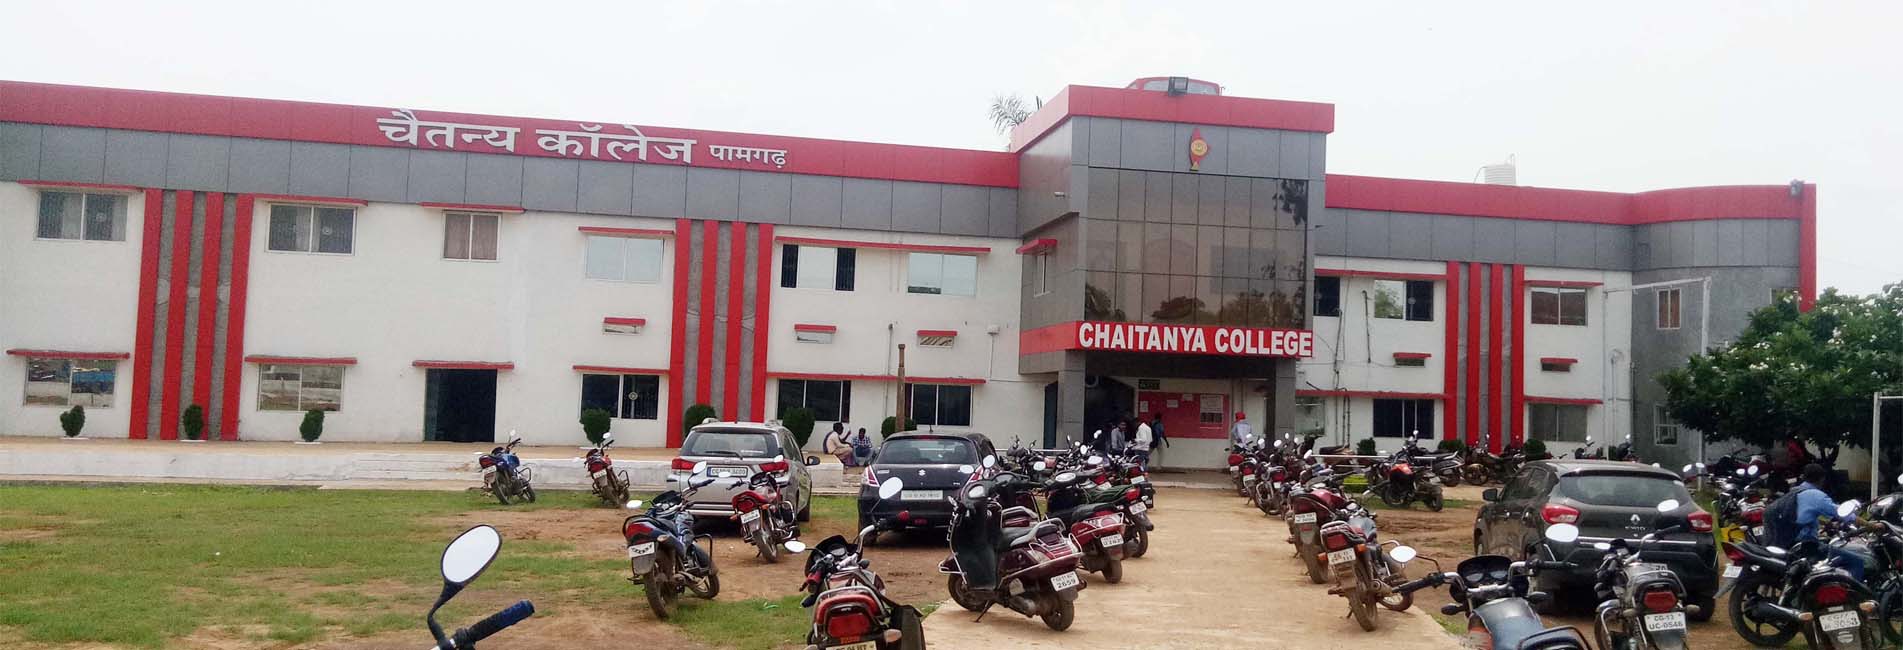 Chaitanya College Pamgarh, Champa Image